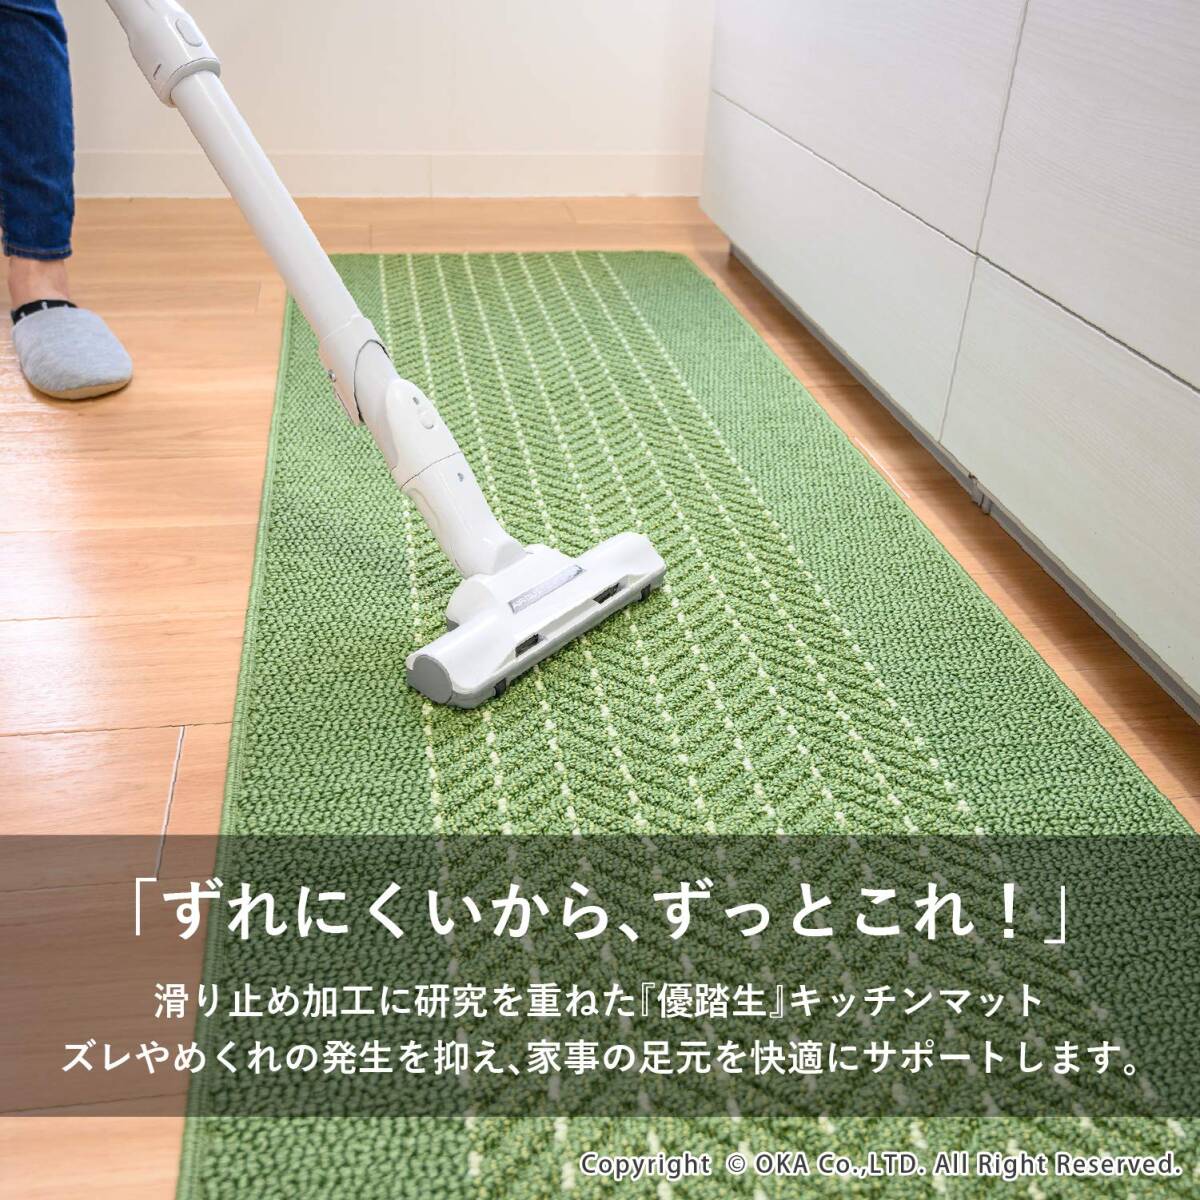 オカ(OKA) 優踏生 洗いやすいキッチンマットヘリンボン 約45cm×252cm グリーン (すべらない 日本製 北欧)_画像2